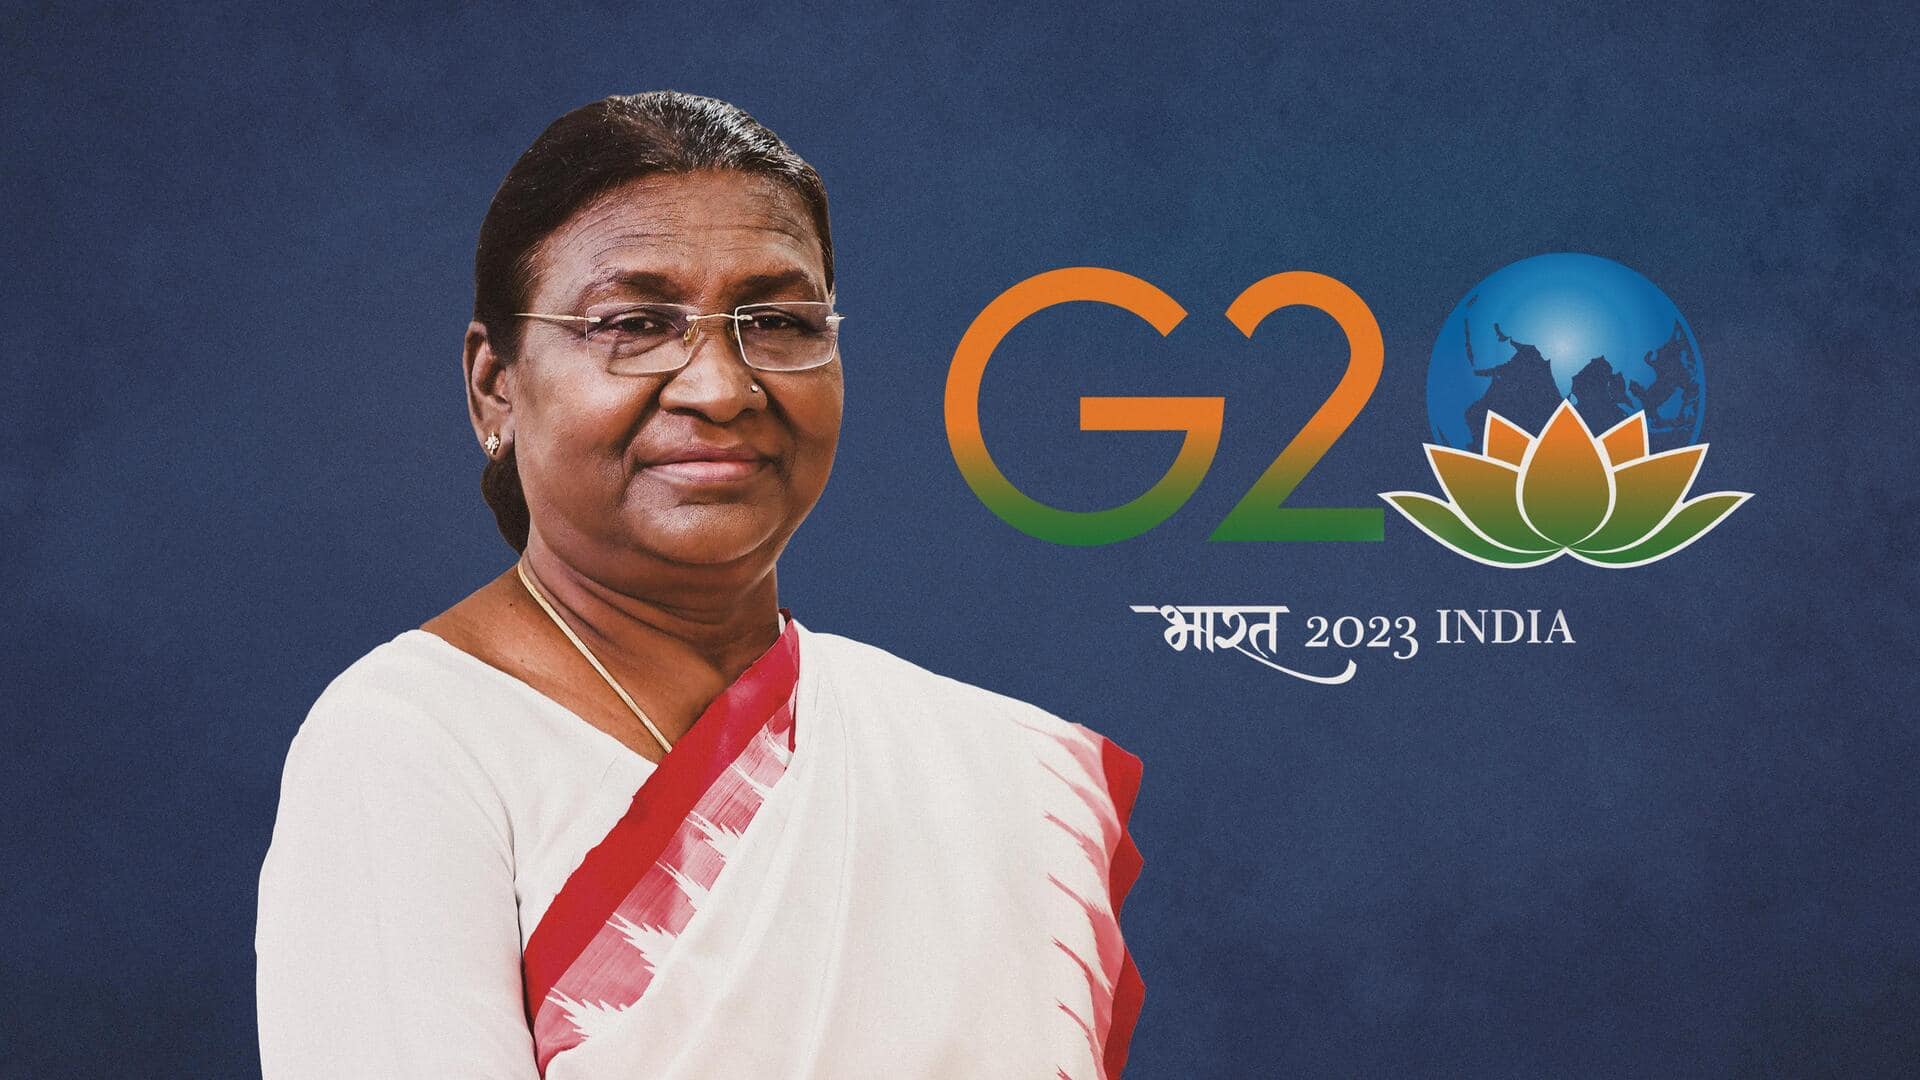 'President Of Bharat': G20 dinner invite sparks row